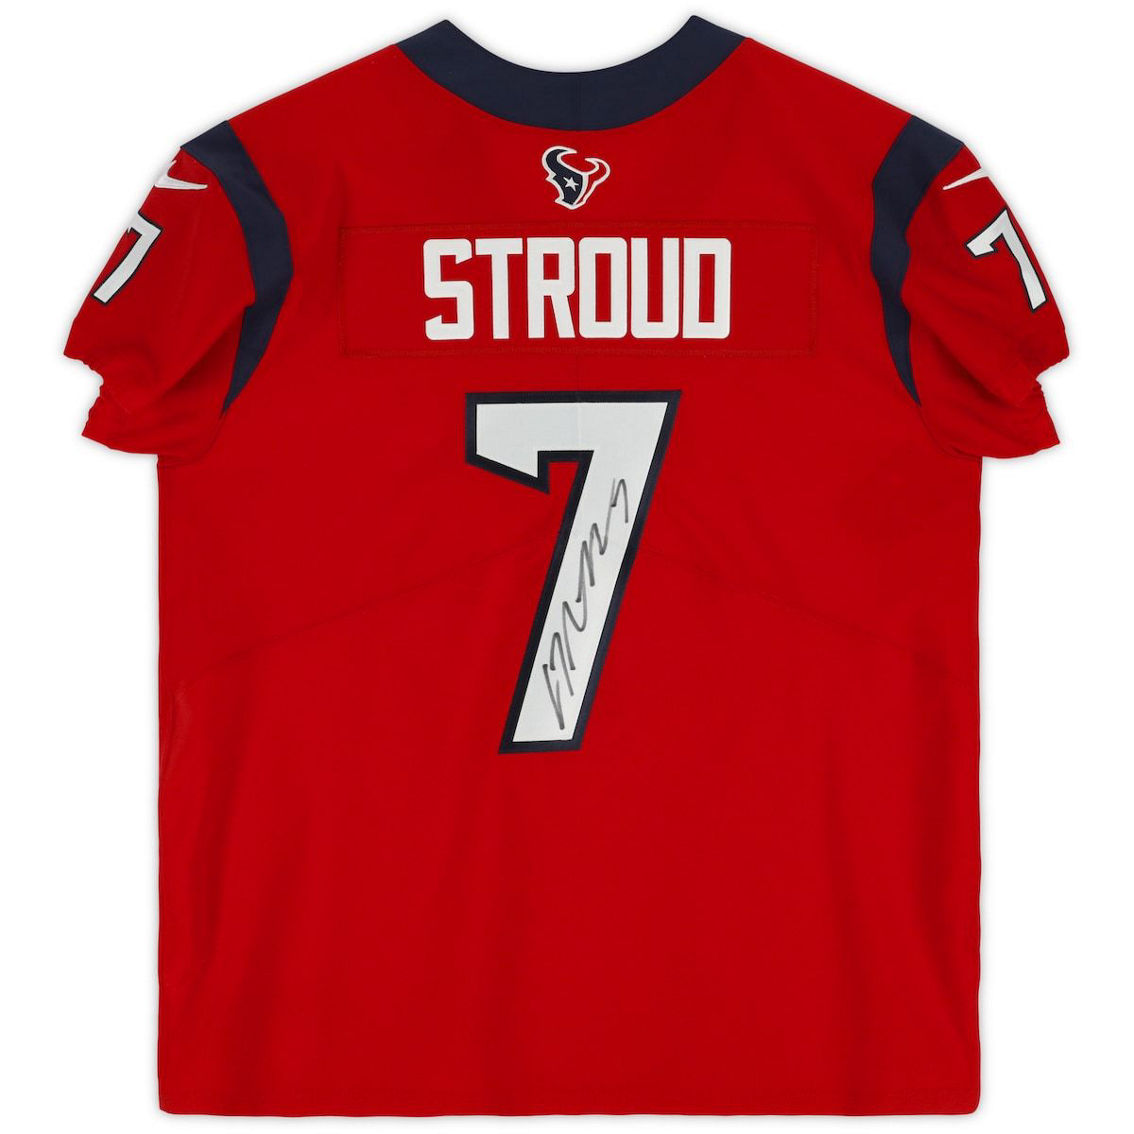 Fanatics Authentic C.J. Stroud Houston Texans Autographed Red Elite Jersey - Image 3 of 4